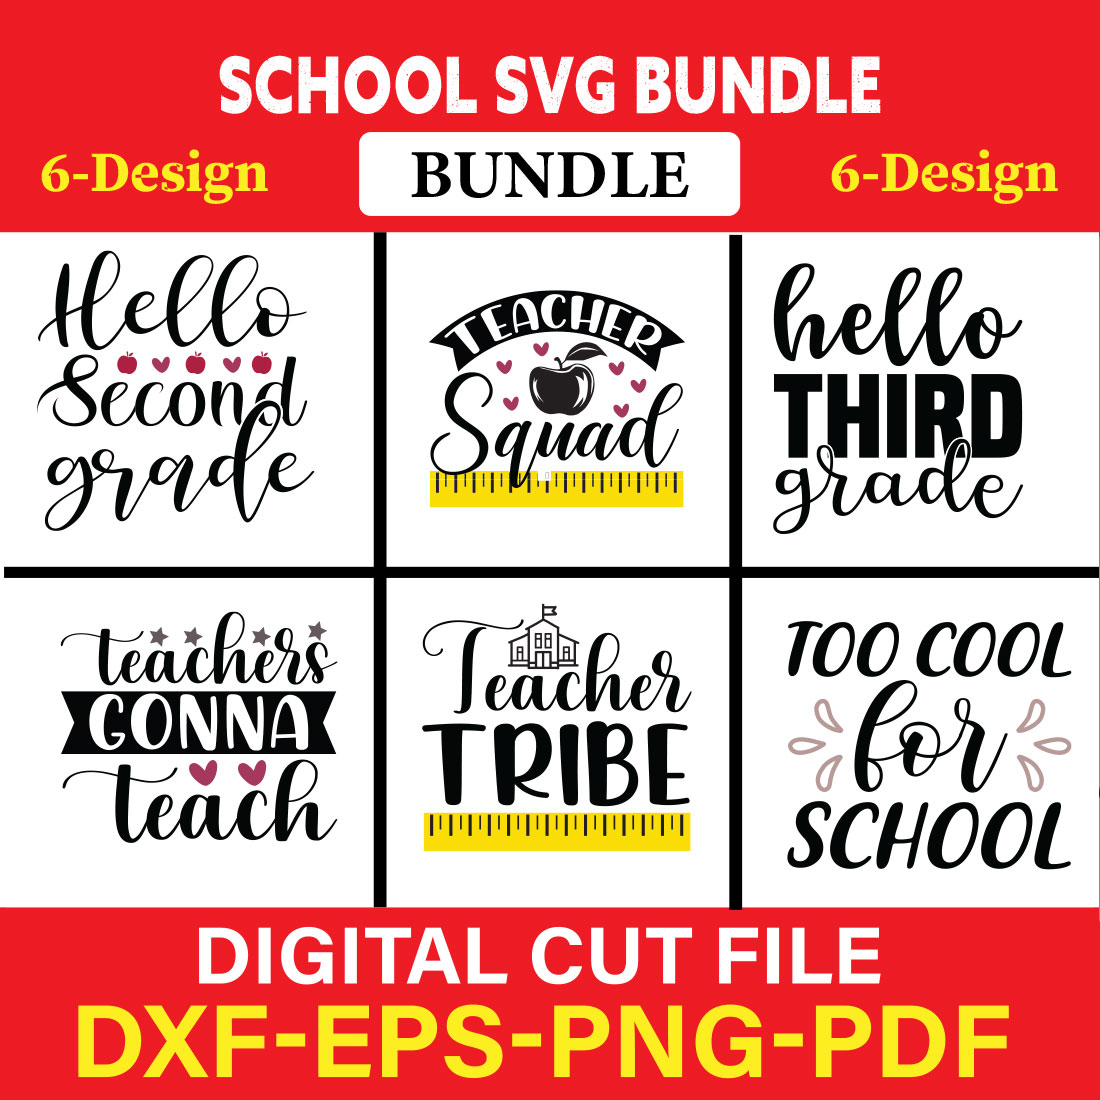 School svg bundle T-shirt Design Bundle Vol-8 cover image.